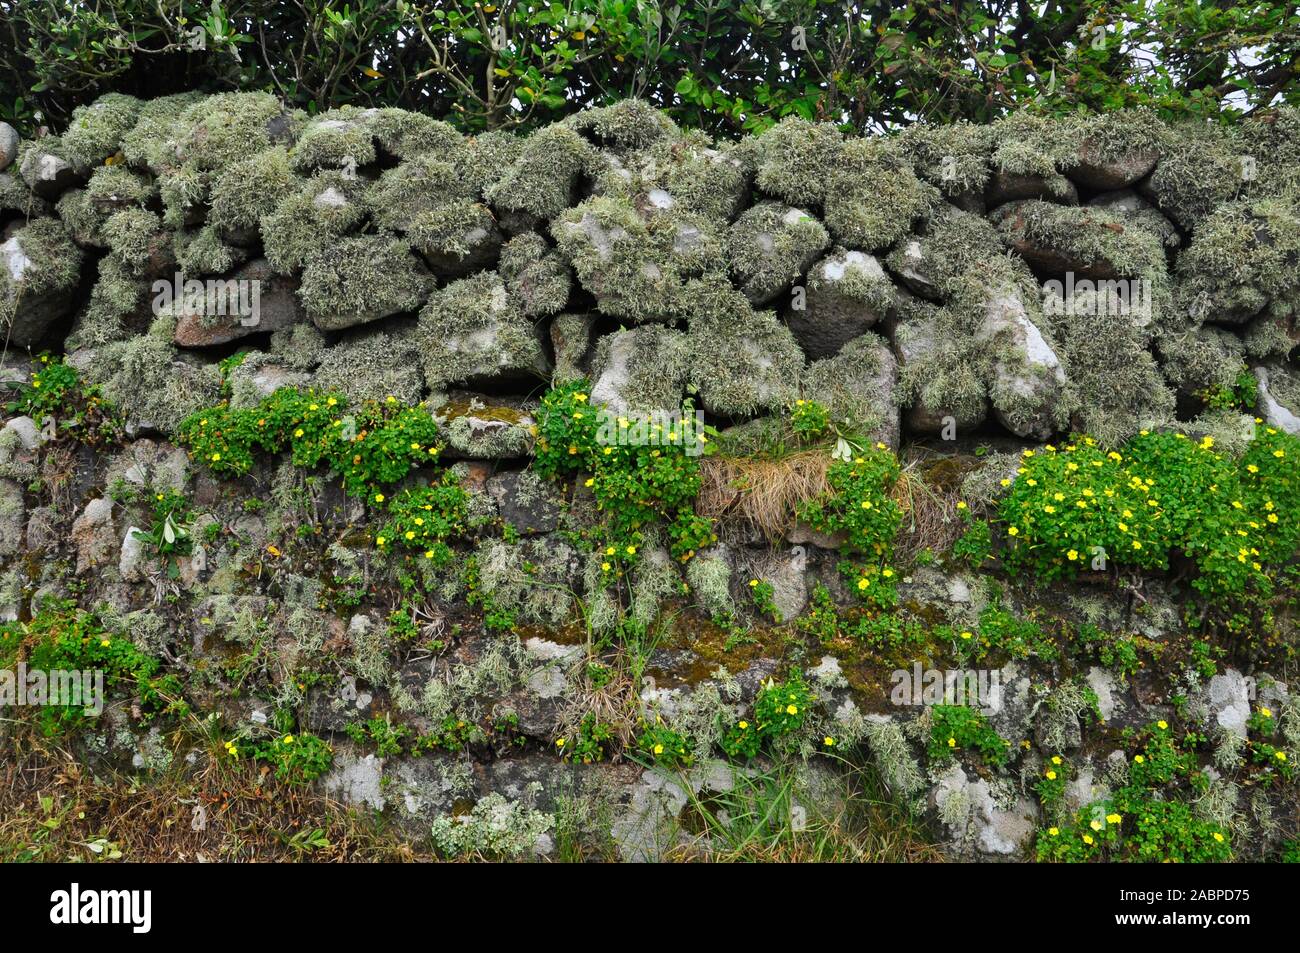 Gelbe wand Oxalis wächst auf einem Granit stein Wand auch in Flechten und Moos bedeckt. St Mary's Scilly-inseln Cornwall GROSSBRITANNIEN Stockfoto